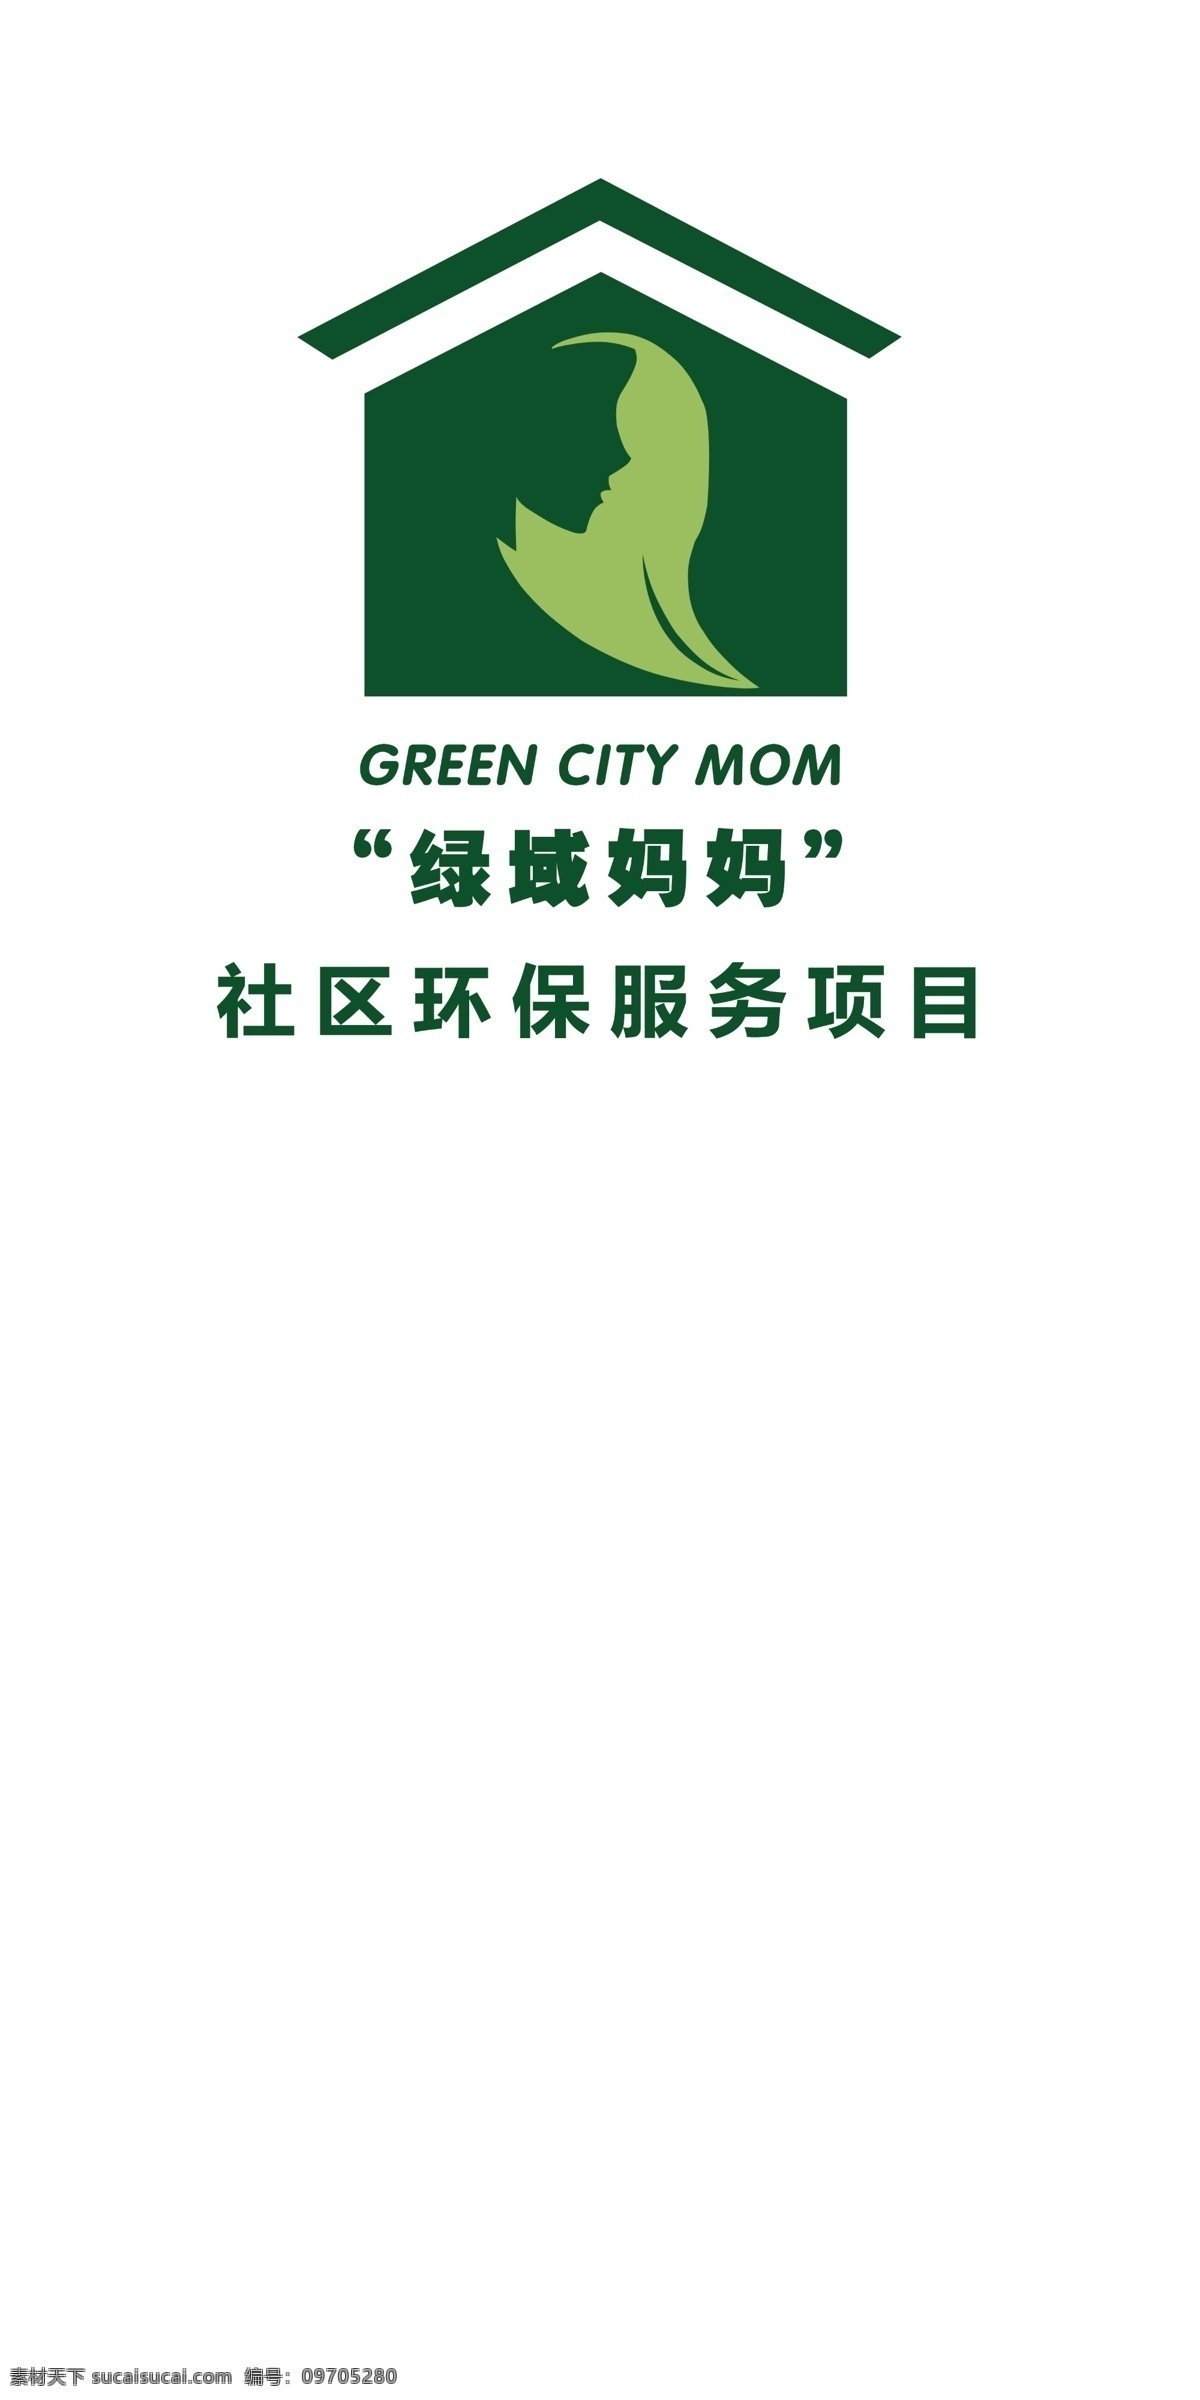 吕 域 妈妈 logo 环保logo 绿色 社区 标志 logo设计